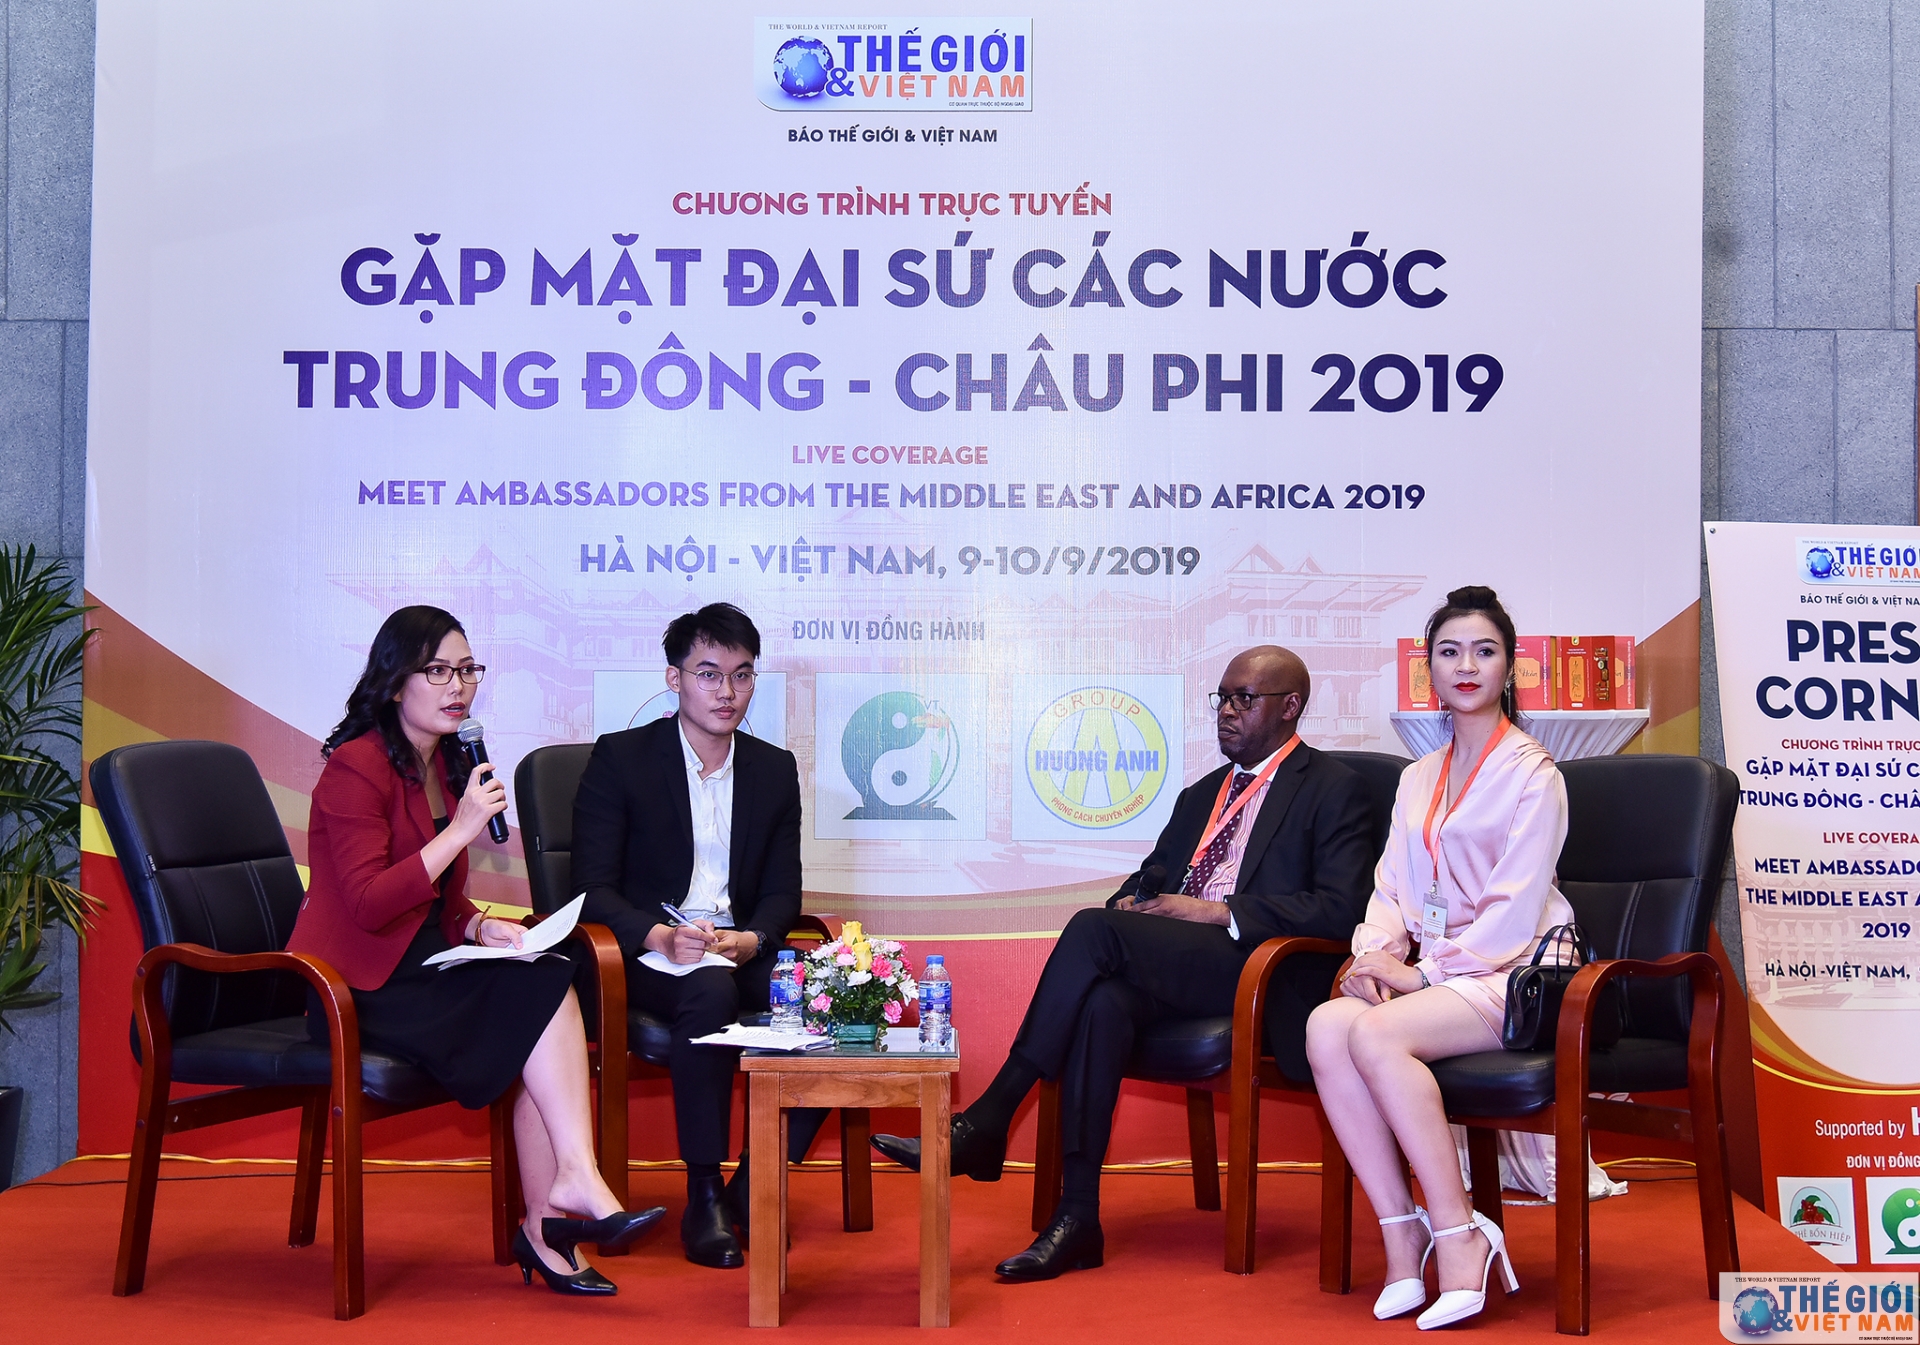 chuong trinh truc tuyen gap mat dai su cac nuoc trung dong chau phi 2019